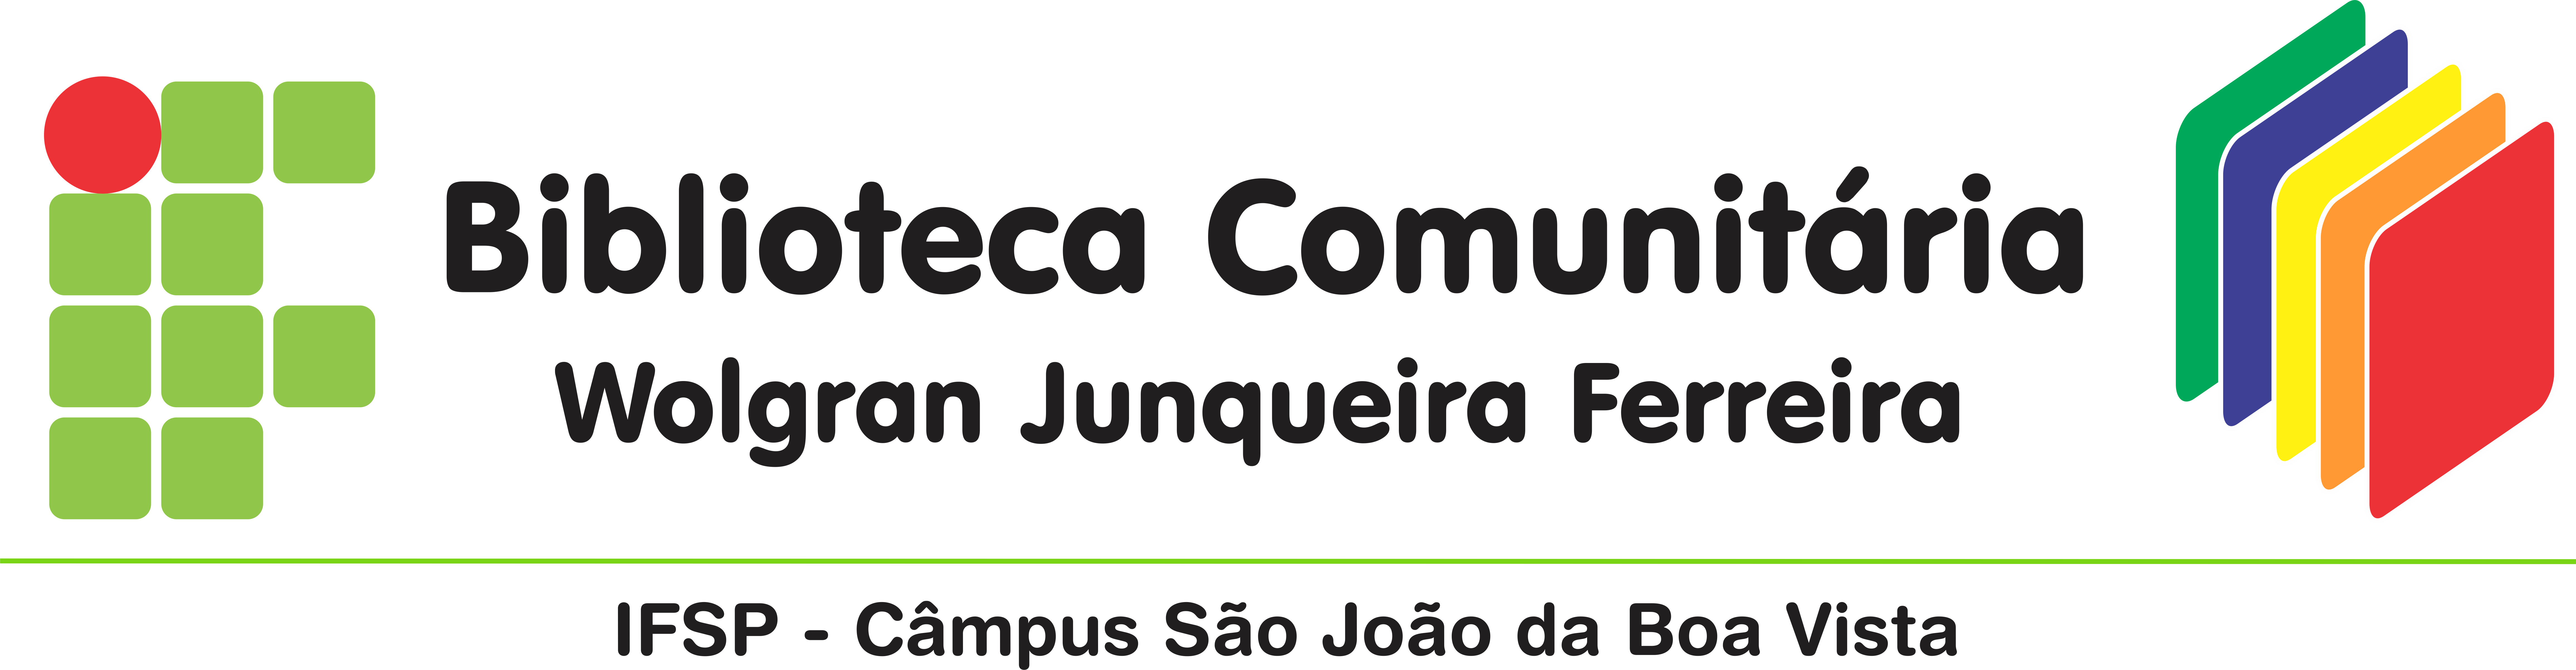 Biblioteca Comunitária Wolgran Junqueira Ferreira